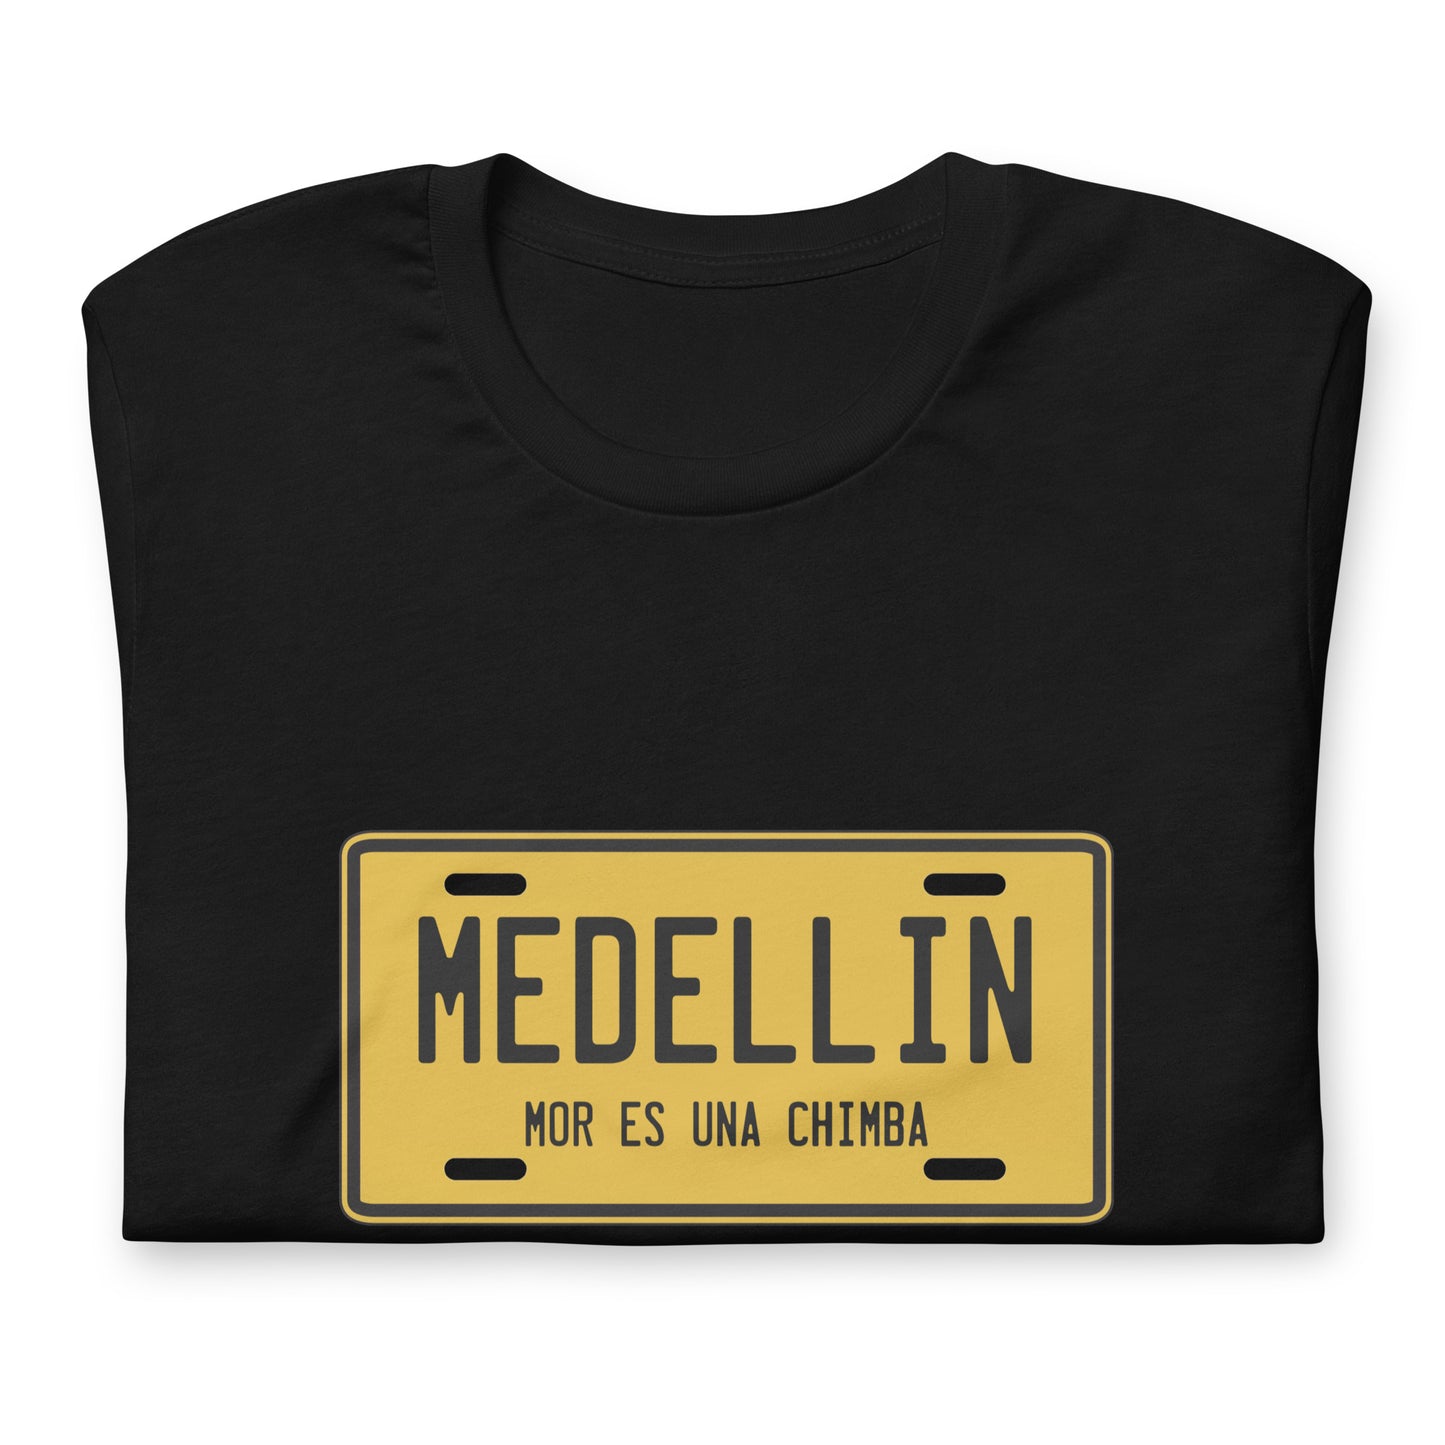 Muestra tu orgullo colombiano con la Camiseta Medellín Mor es una Chimba. Diseñada con los mejores materiales y un estampado duradero.